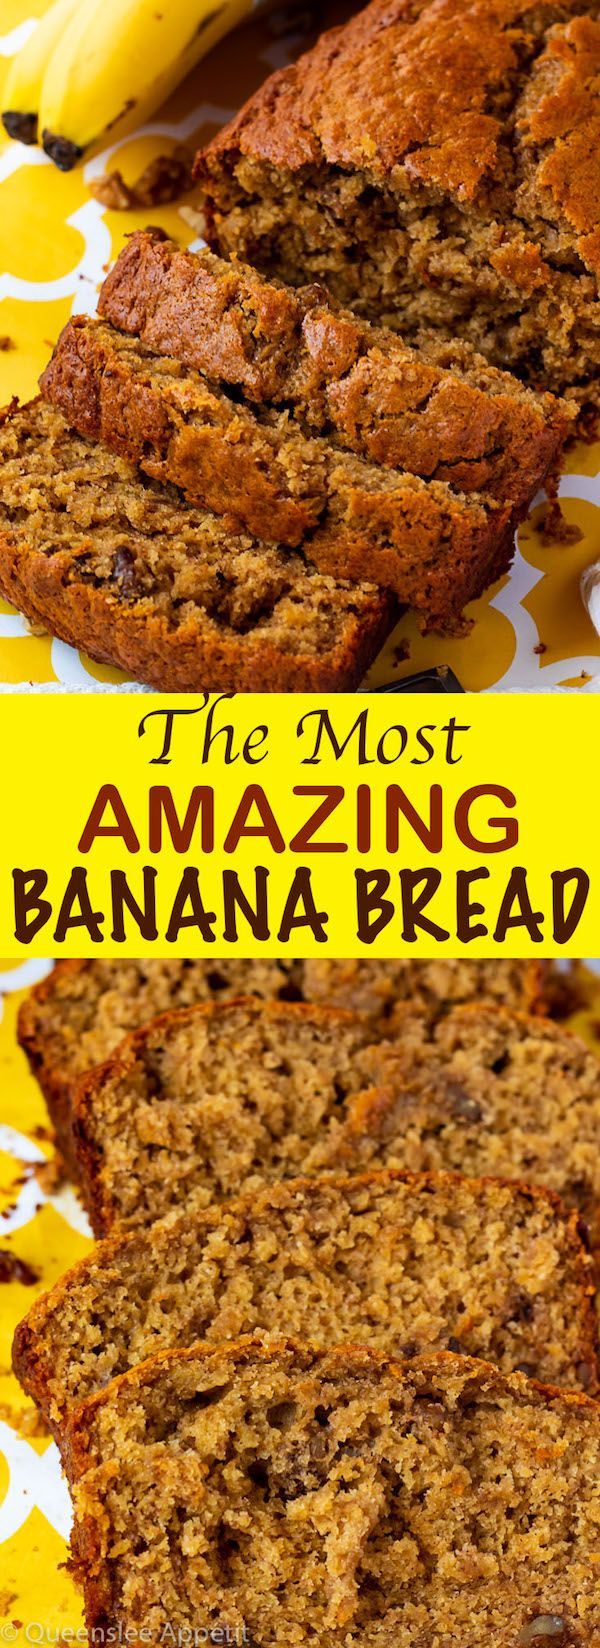 The Most Amazing Banana Bread -   10 cake Amazing banana bread ideas